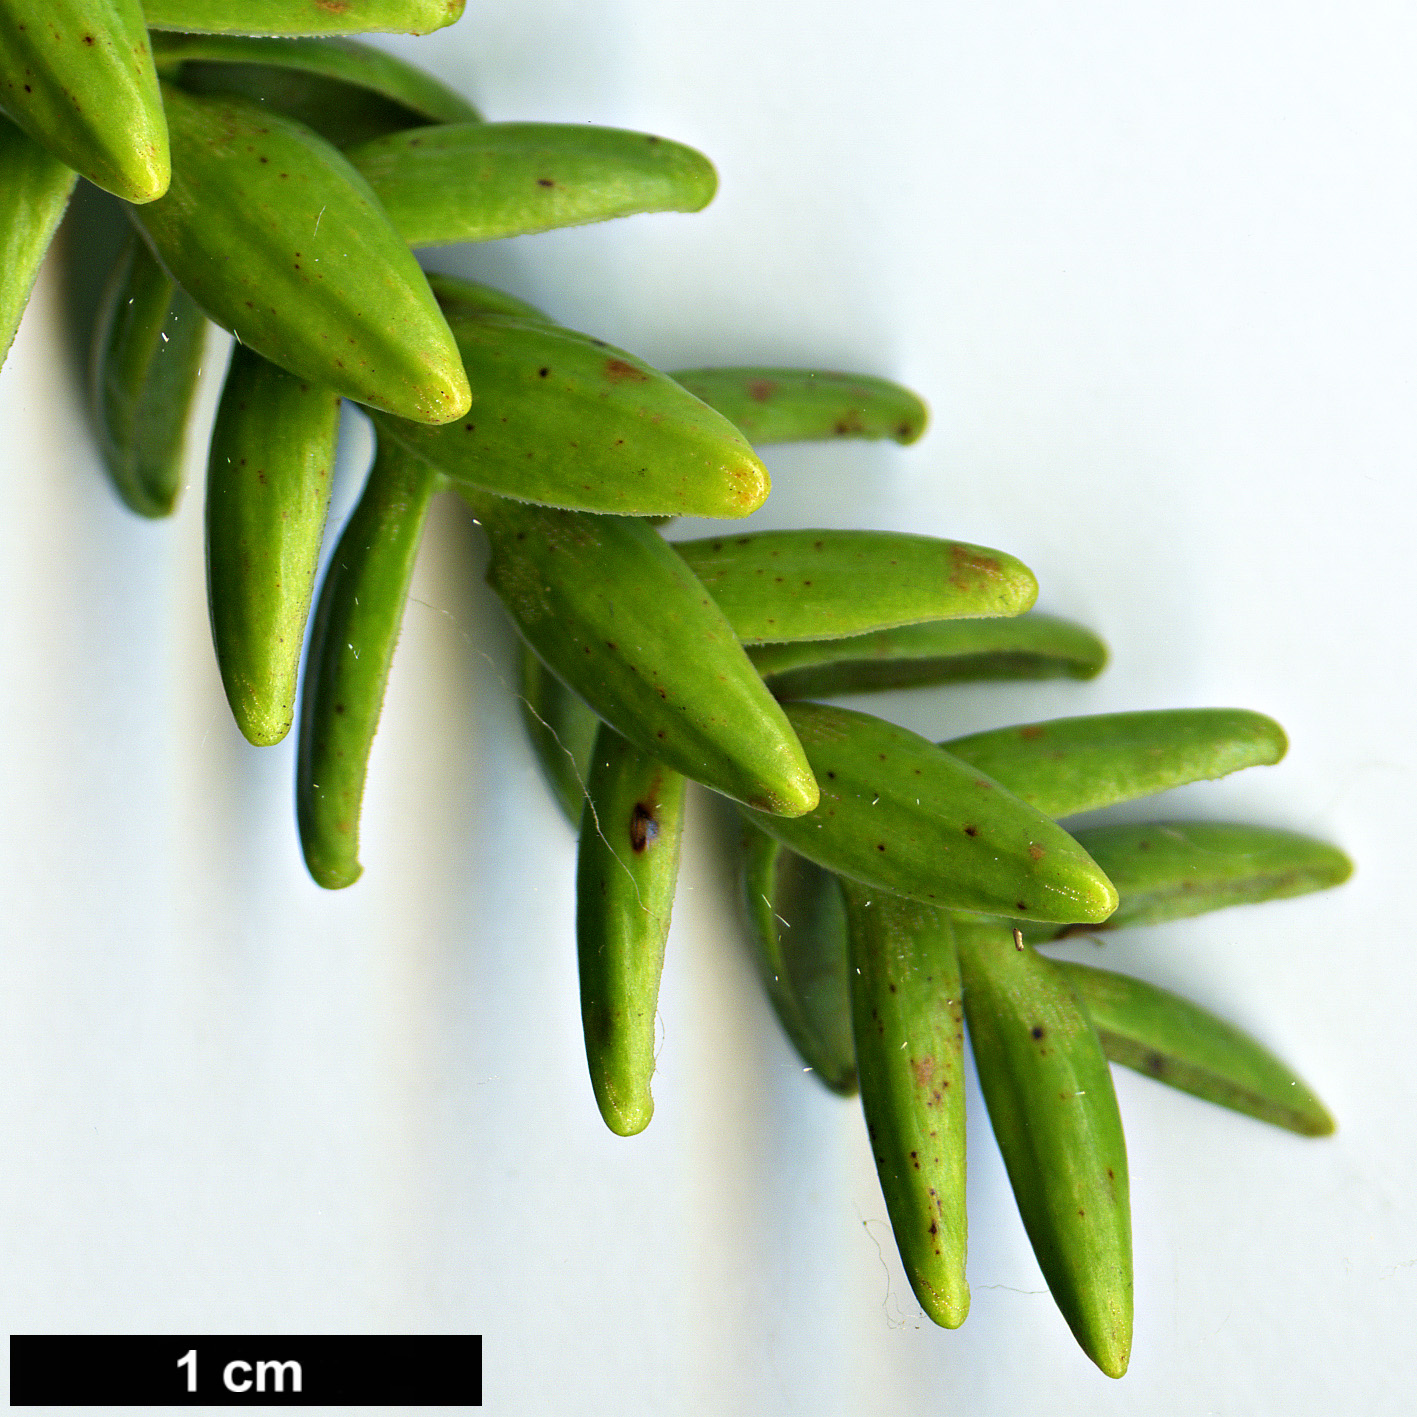 High resolution image: Family: Araucariaceae - Genus: Araucaria - Taxon: montana